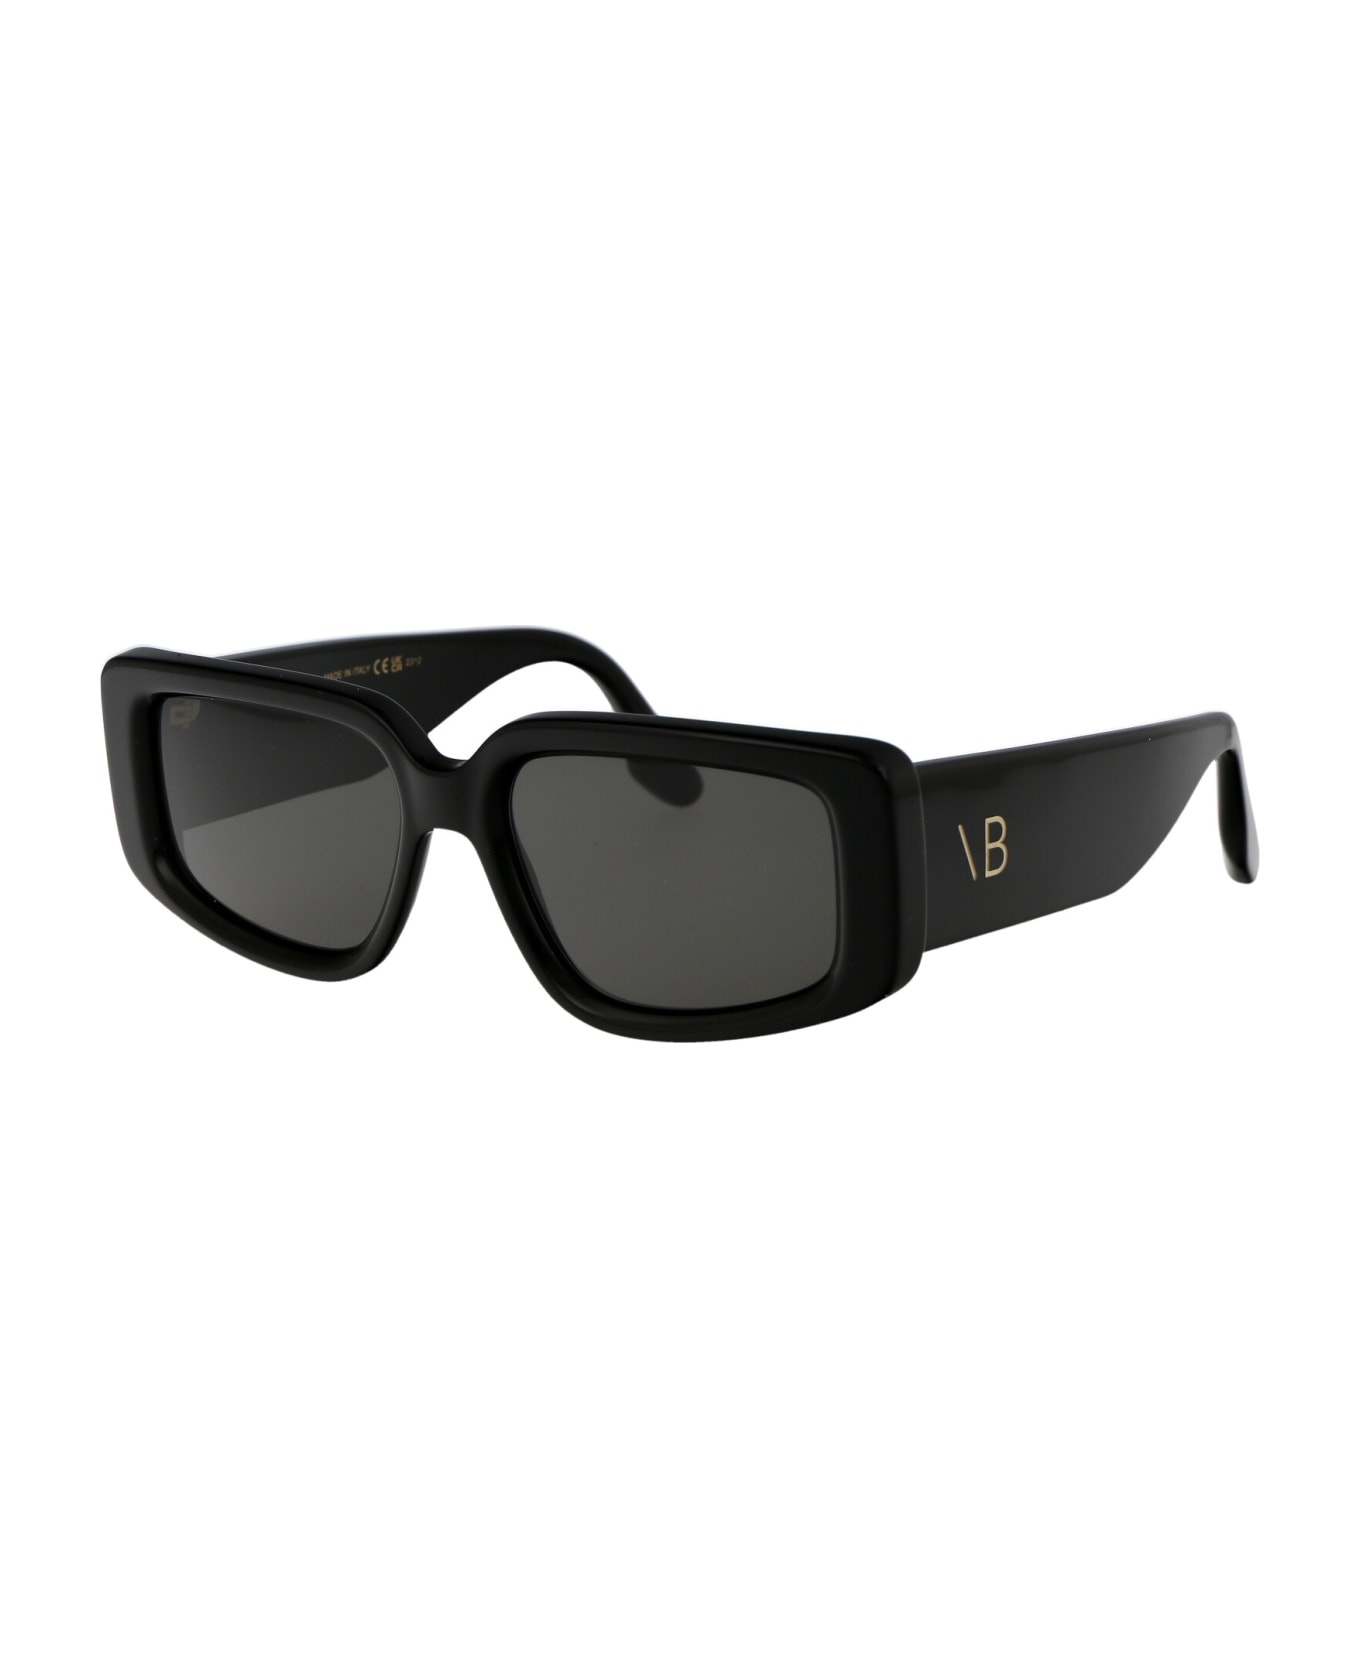 Victoria Beckham Vb670s Sunglasses - 001 BLACK